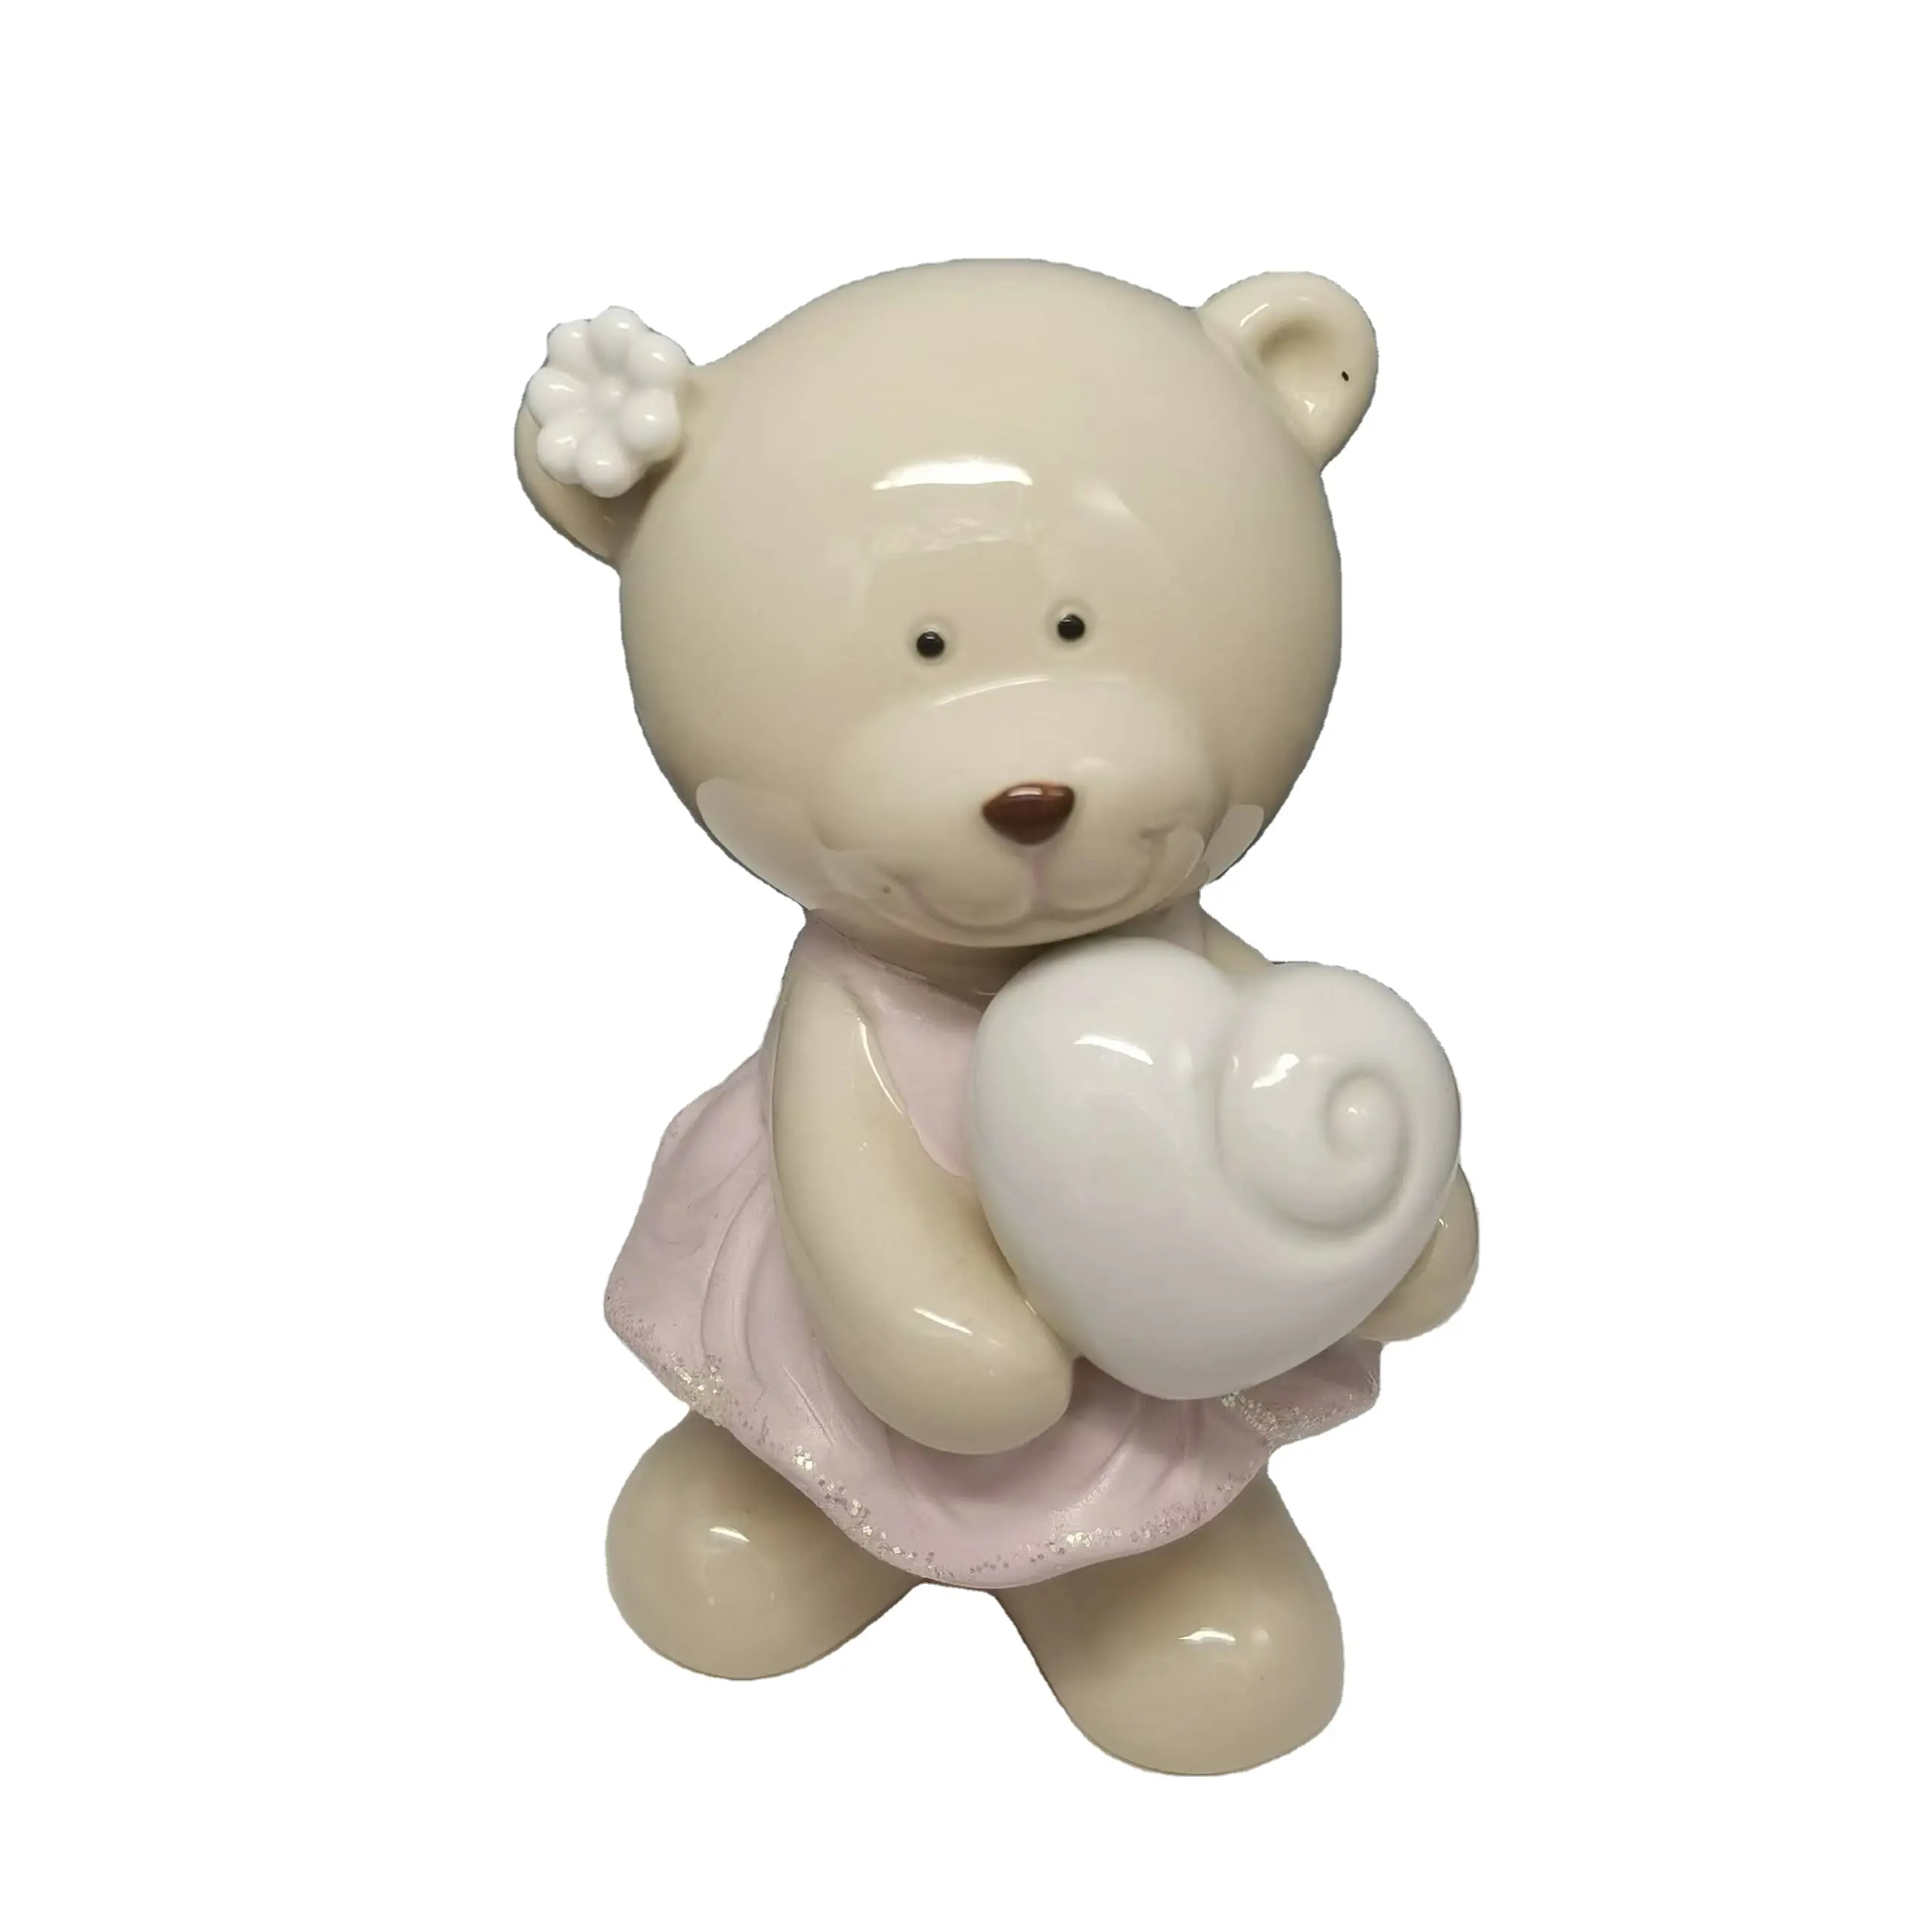 statue ceramic little for sale porcelain craft folk Enamel art style girl bear taking heart style